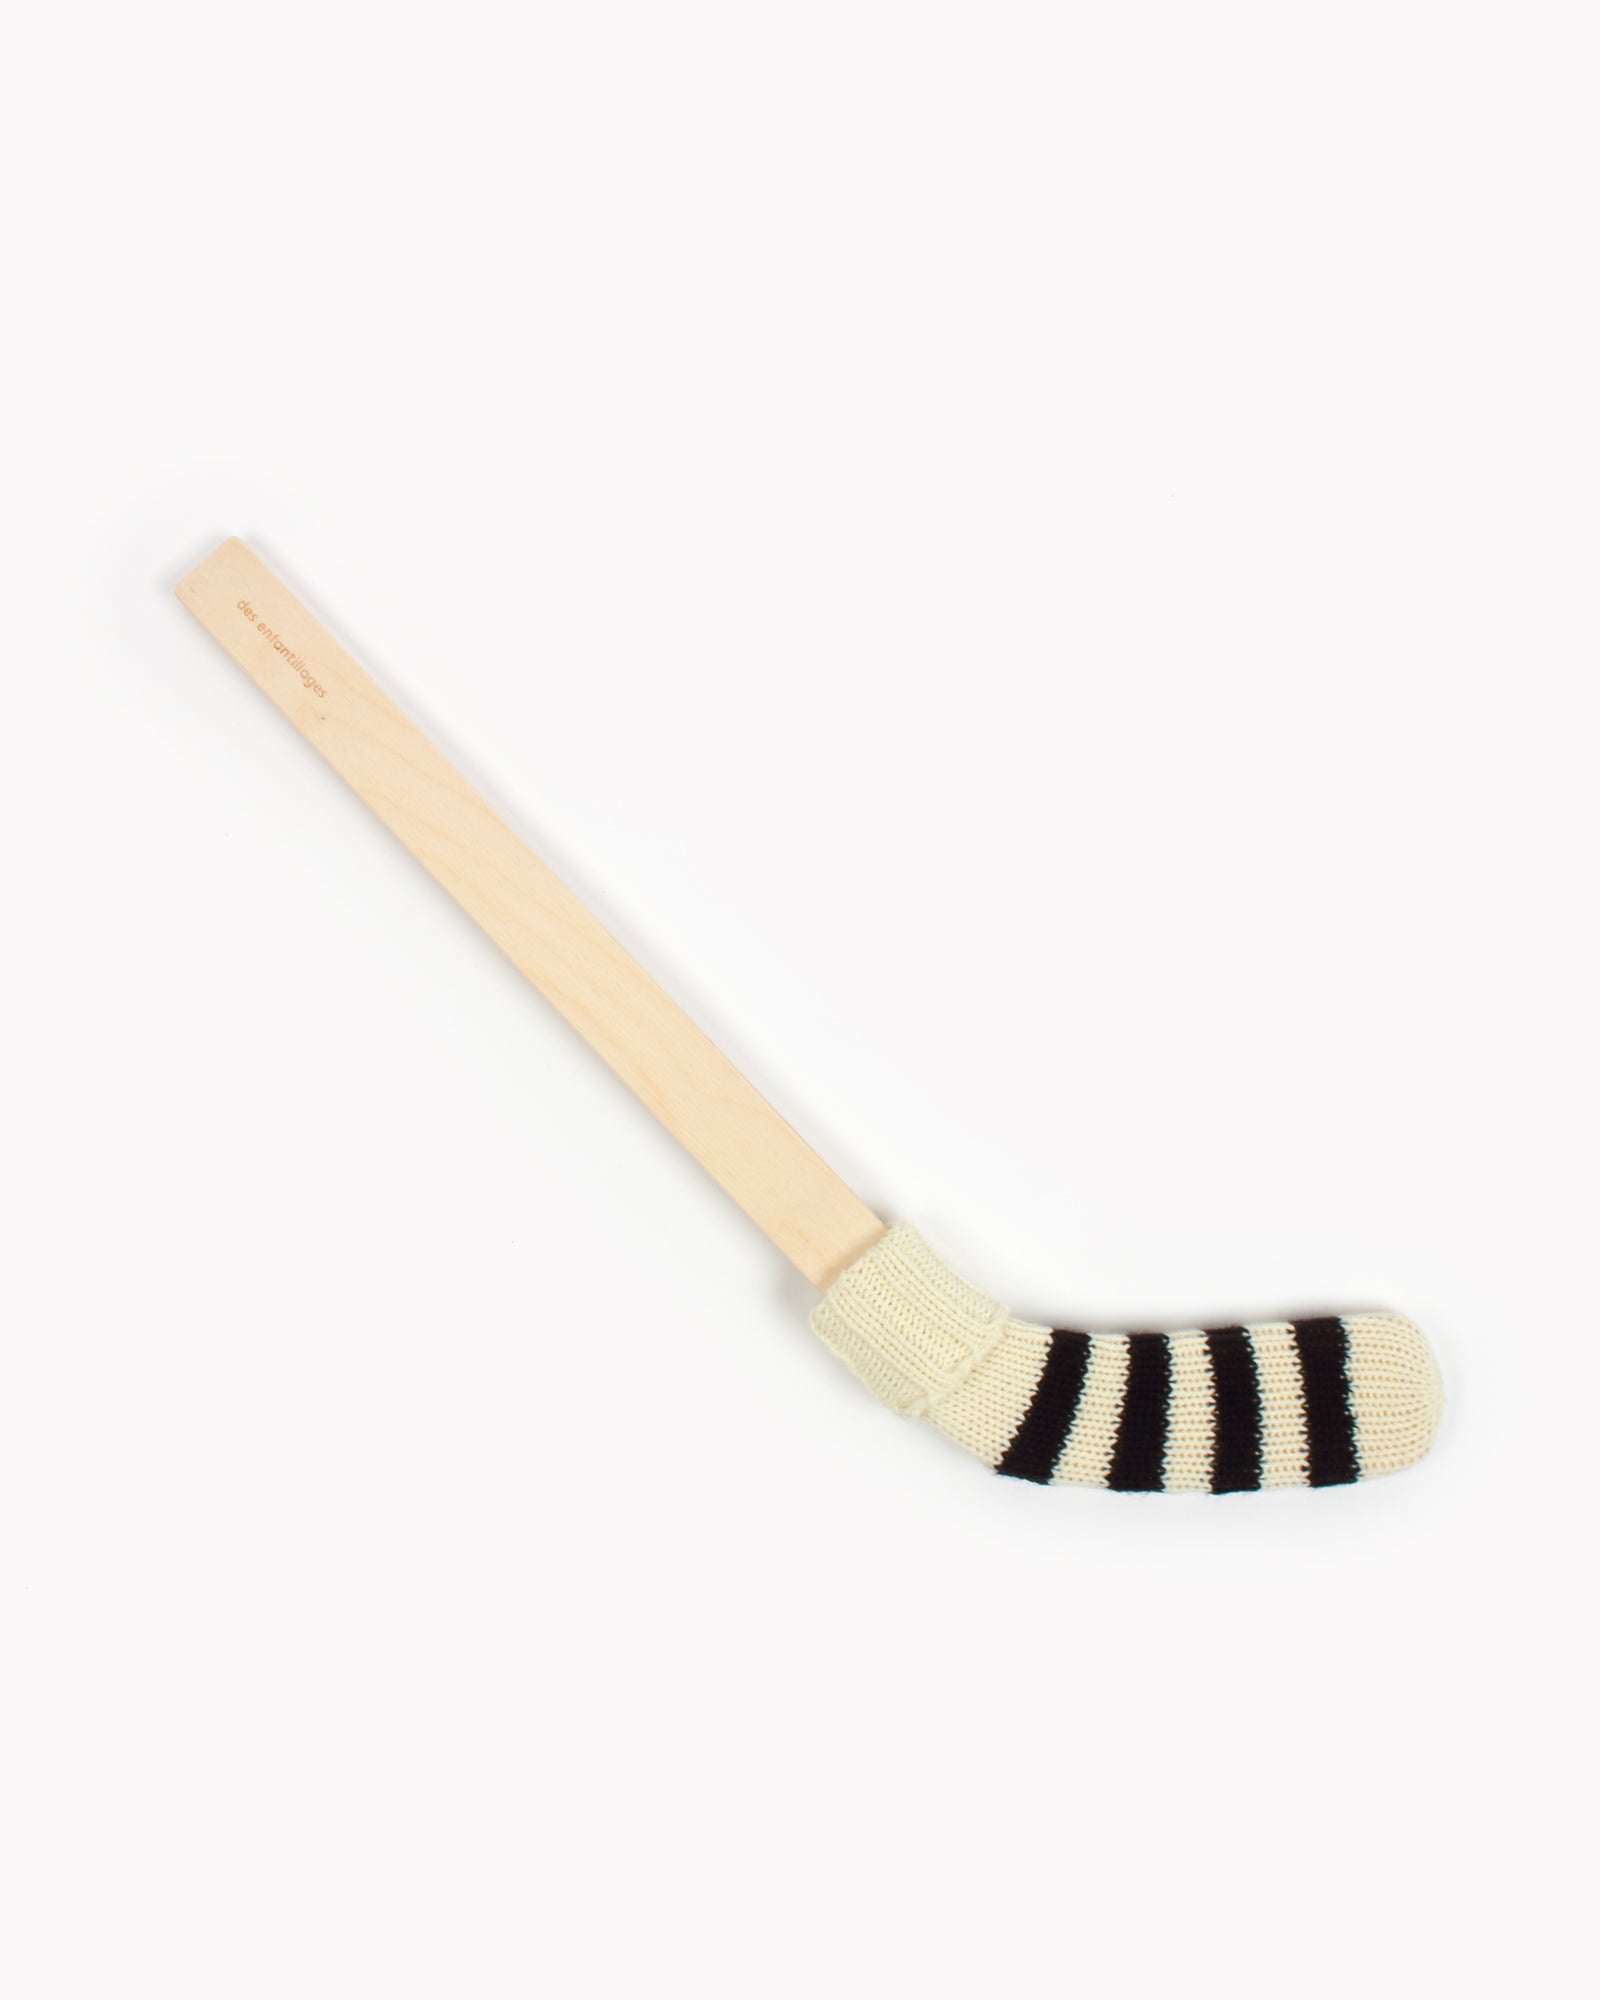 Bâton de hockey ― noir et crème